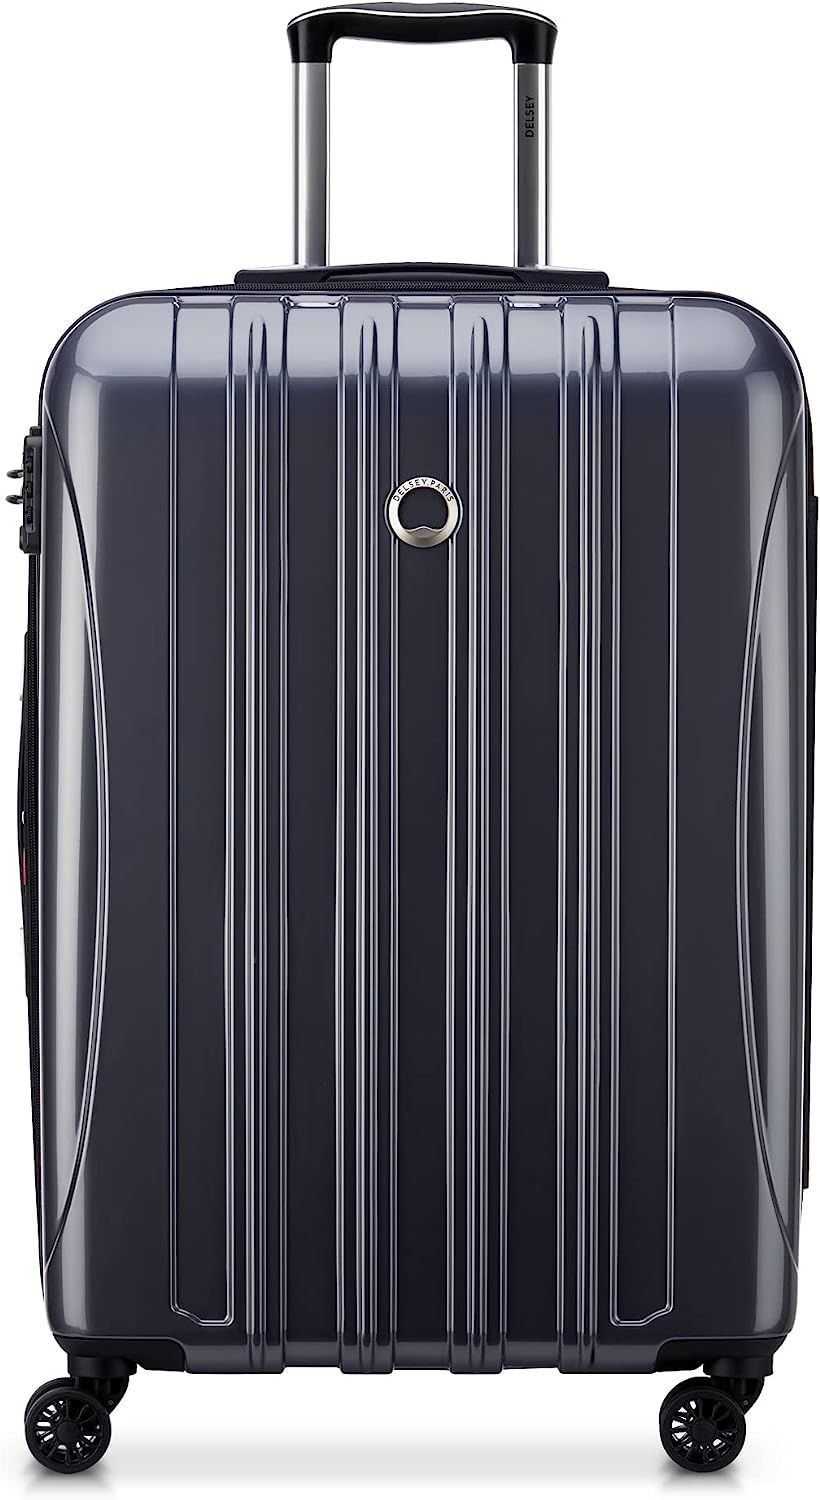 DELSEY Paris Helium Aero Hardside Expandable Luggage with Spinner Wheels, Titanium, Checked-Mediu... | Amazon (US)